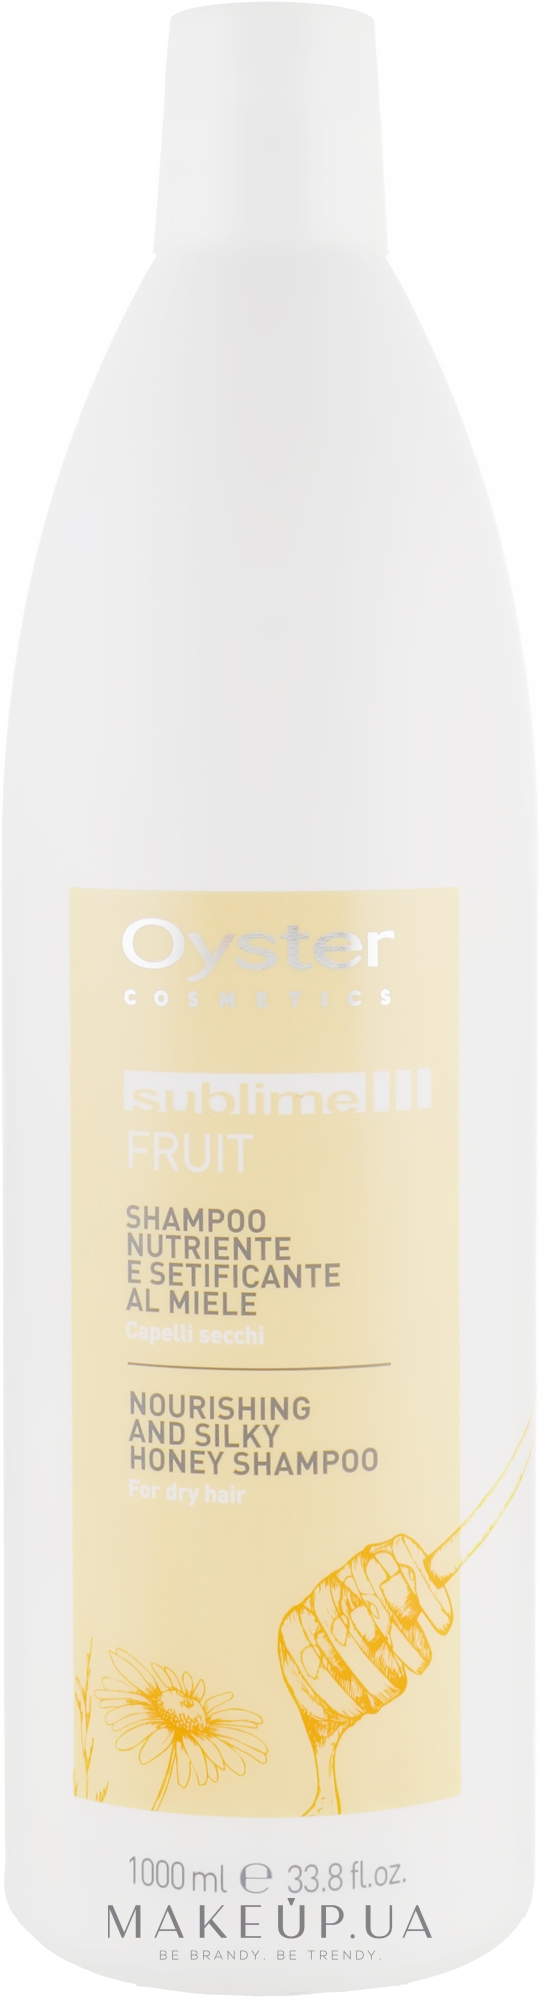 Шампунь для волосся, з екстрактом меду - Oyster Cosmetics Sublime Fruit Shampoo — фото 1000ml